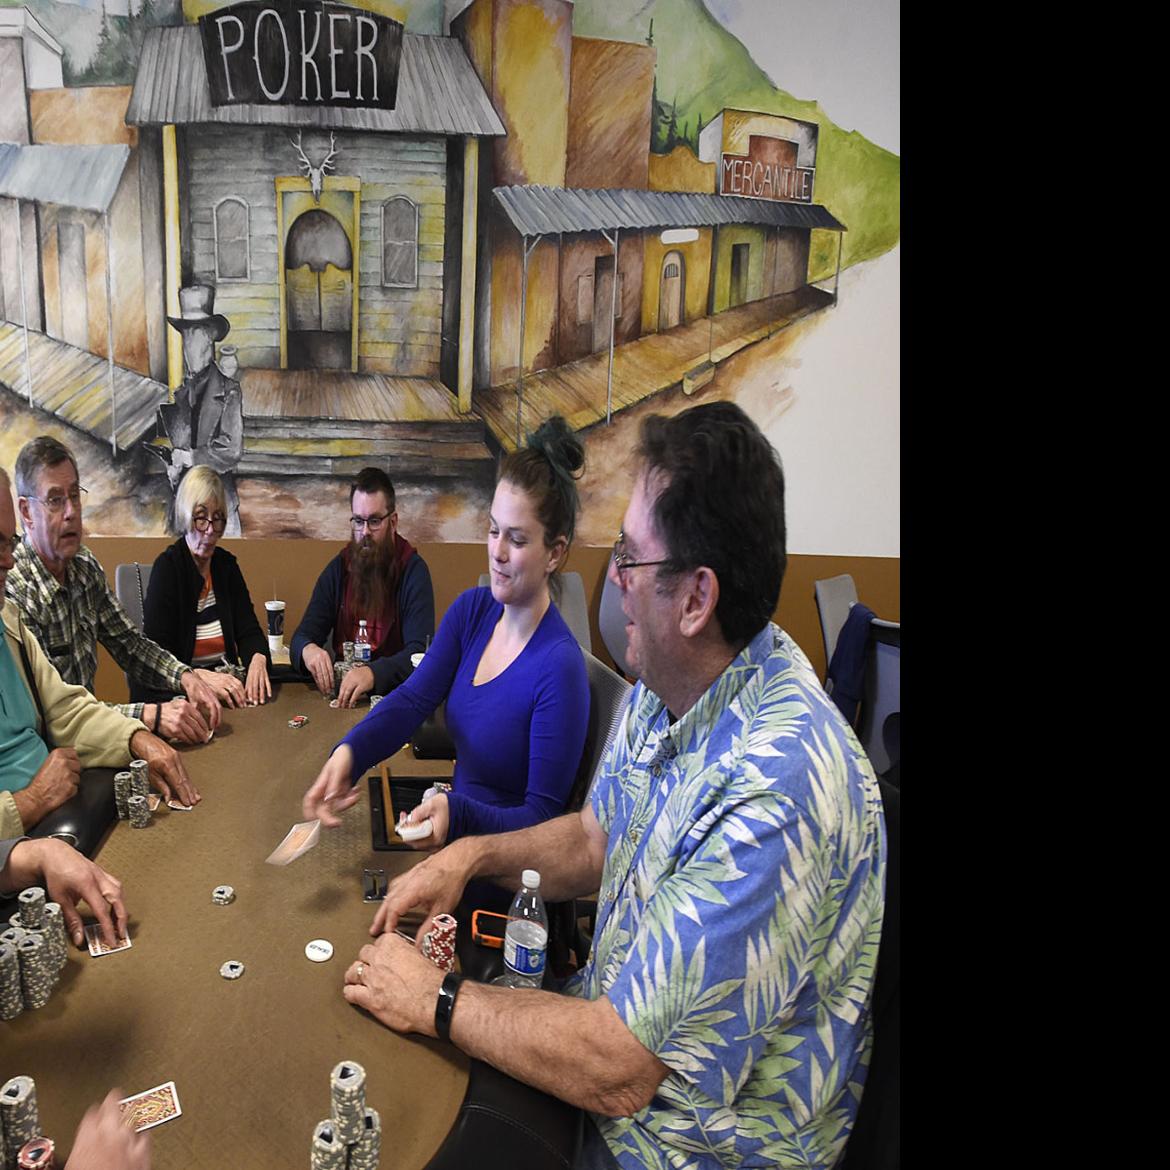 Poker rooms in portland oregon